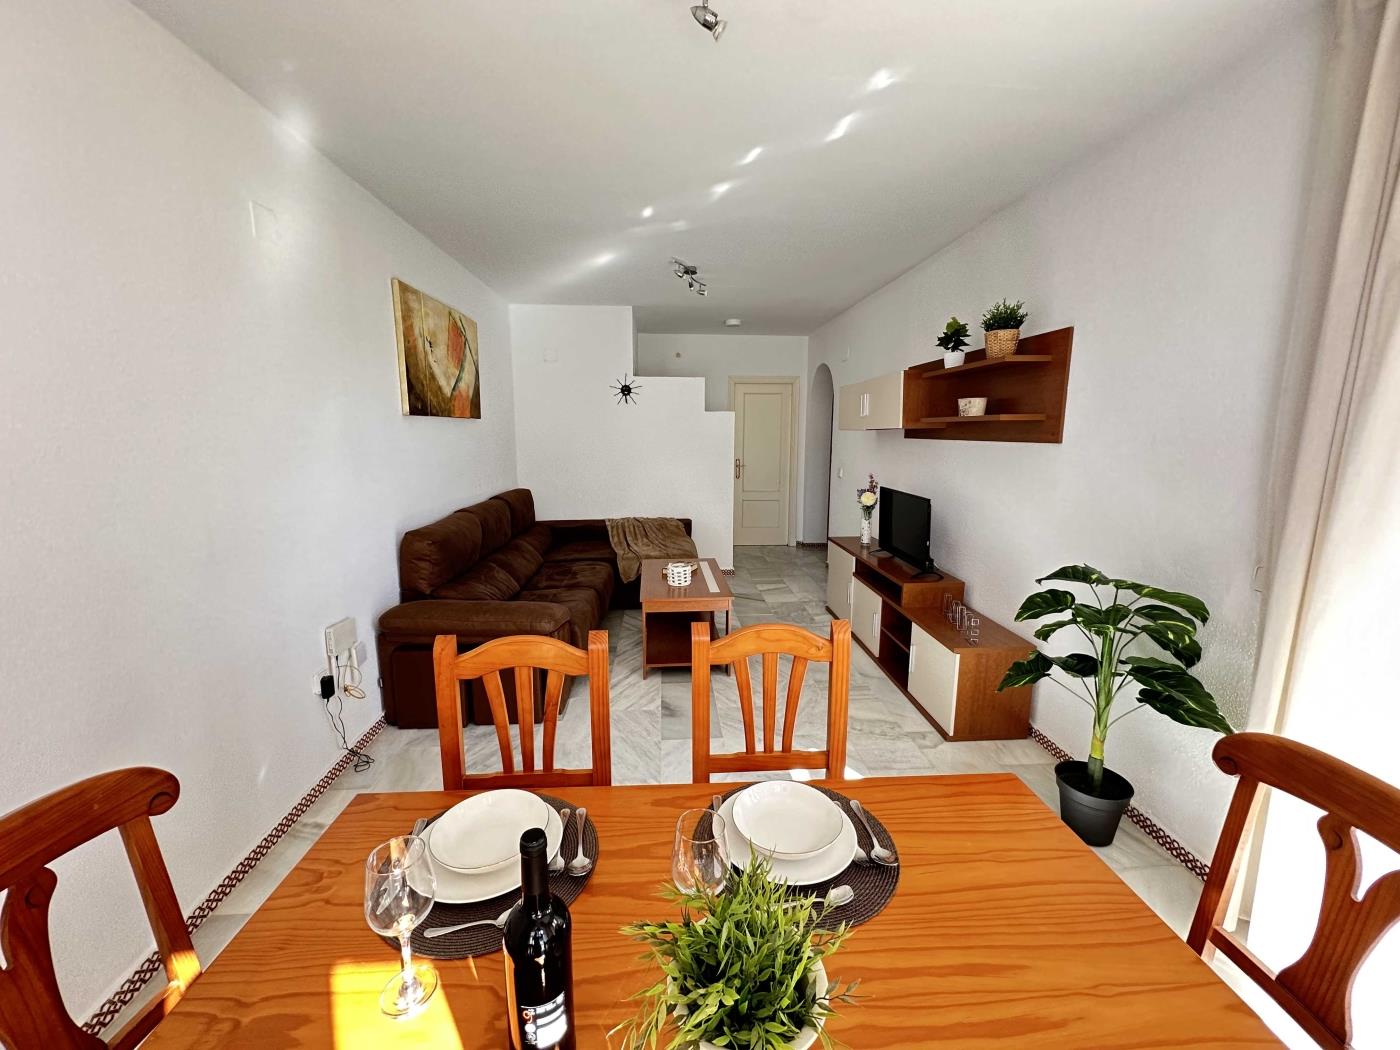 Ref. P2. Apartamento de dos dormitorios en planta primera en Chiclana de la Frontera